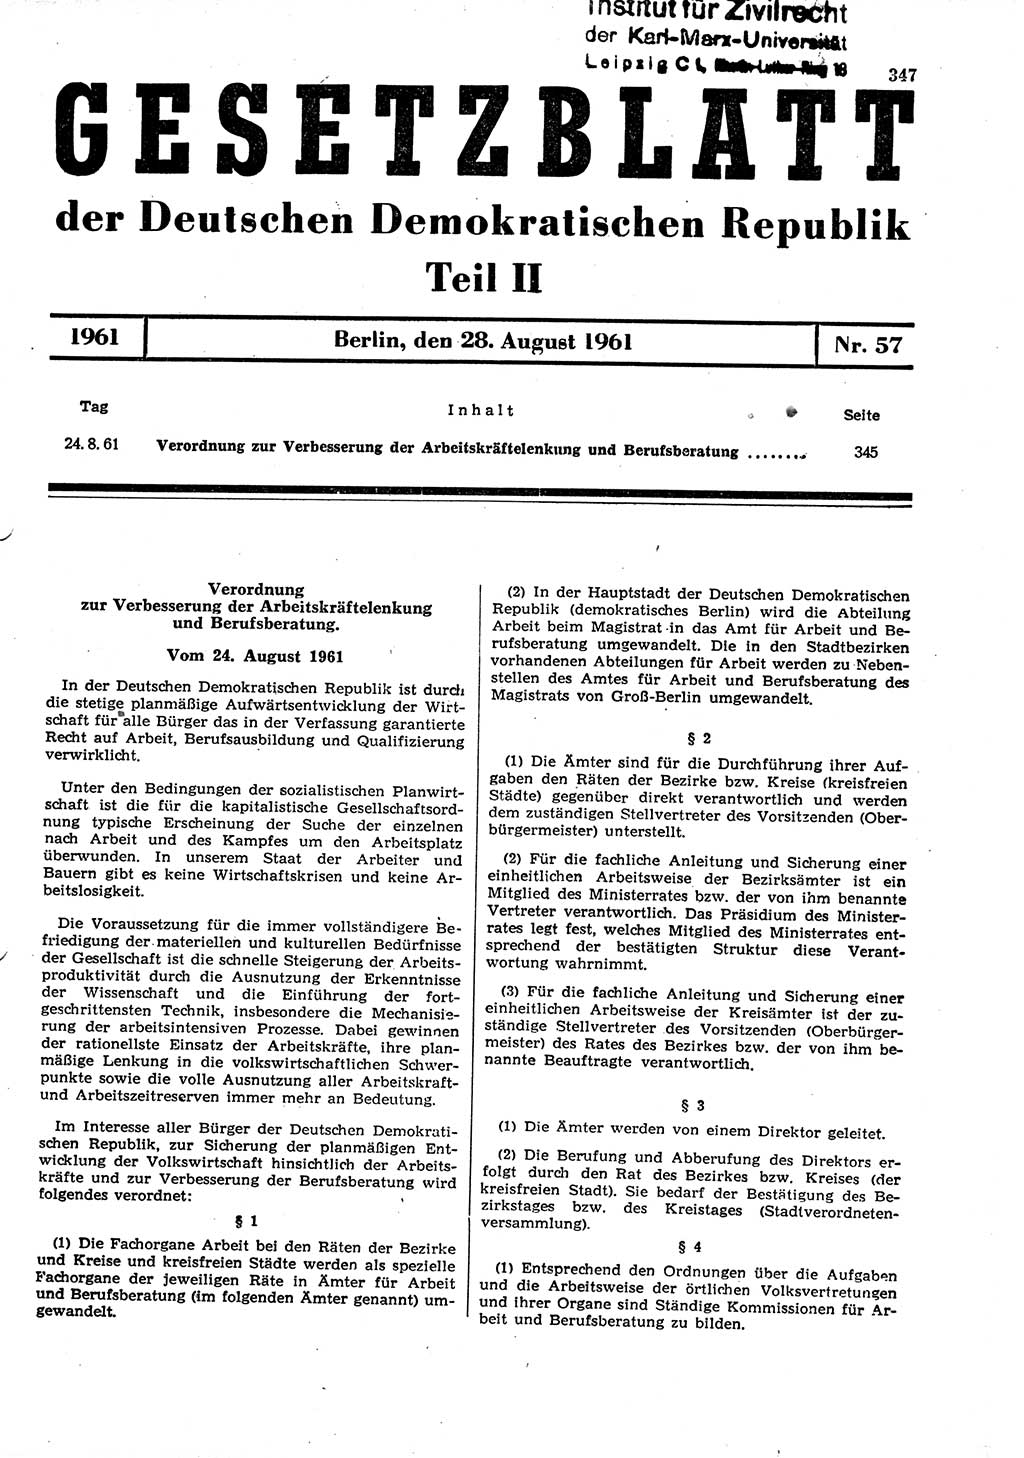 Gesetzblatt (GBl.) der Deutschen Demokratischen Republik (DDR) Teil ⅠⅠ 1961, Seite 347 (GBl. DDR ⅠⅠ 1961, S. 347)